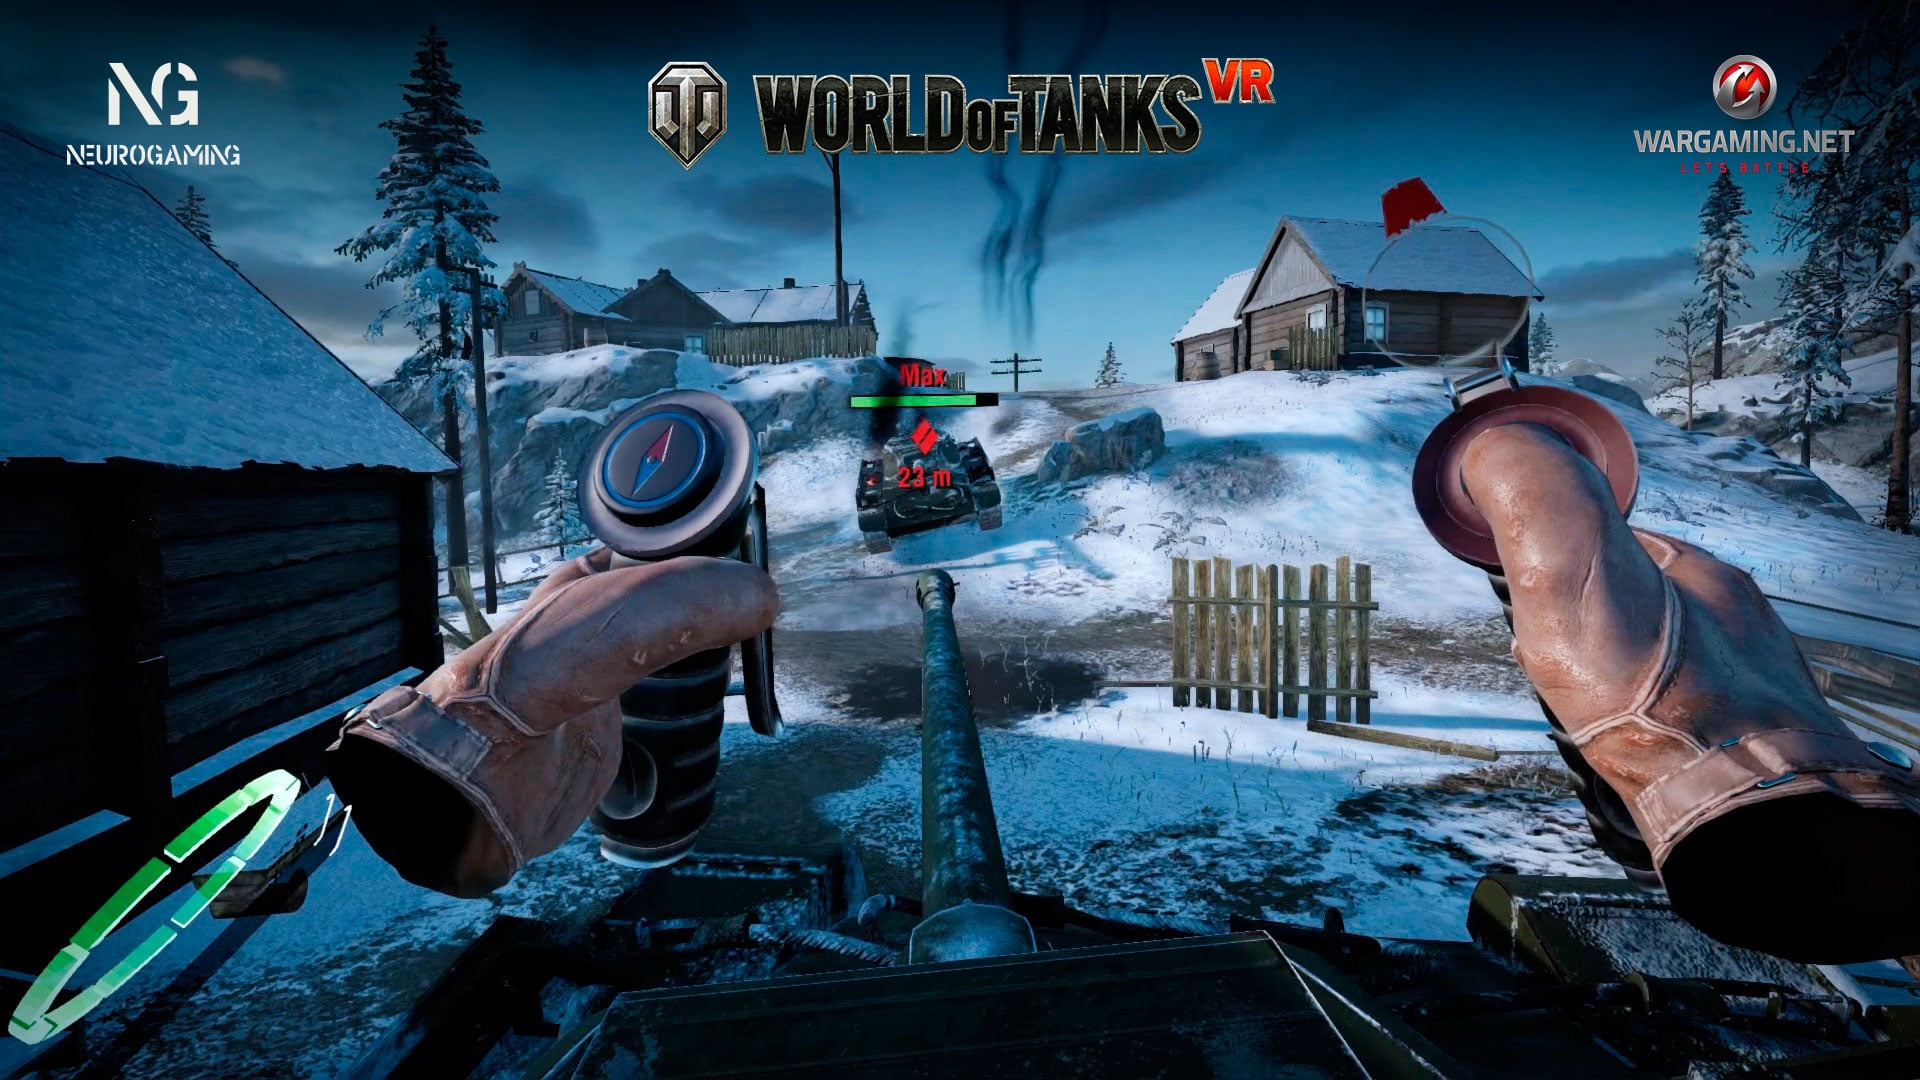 World of Tanks VR